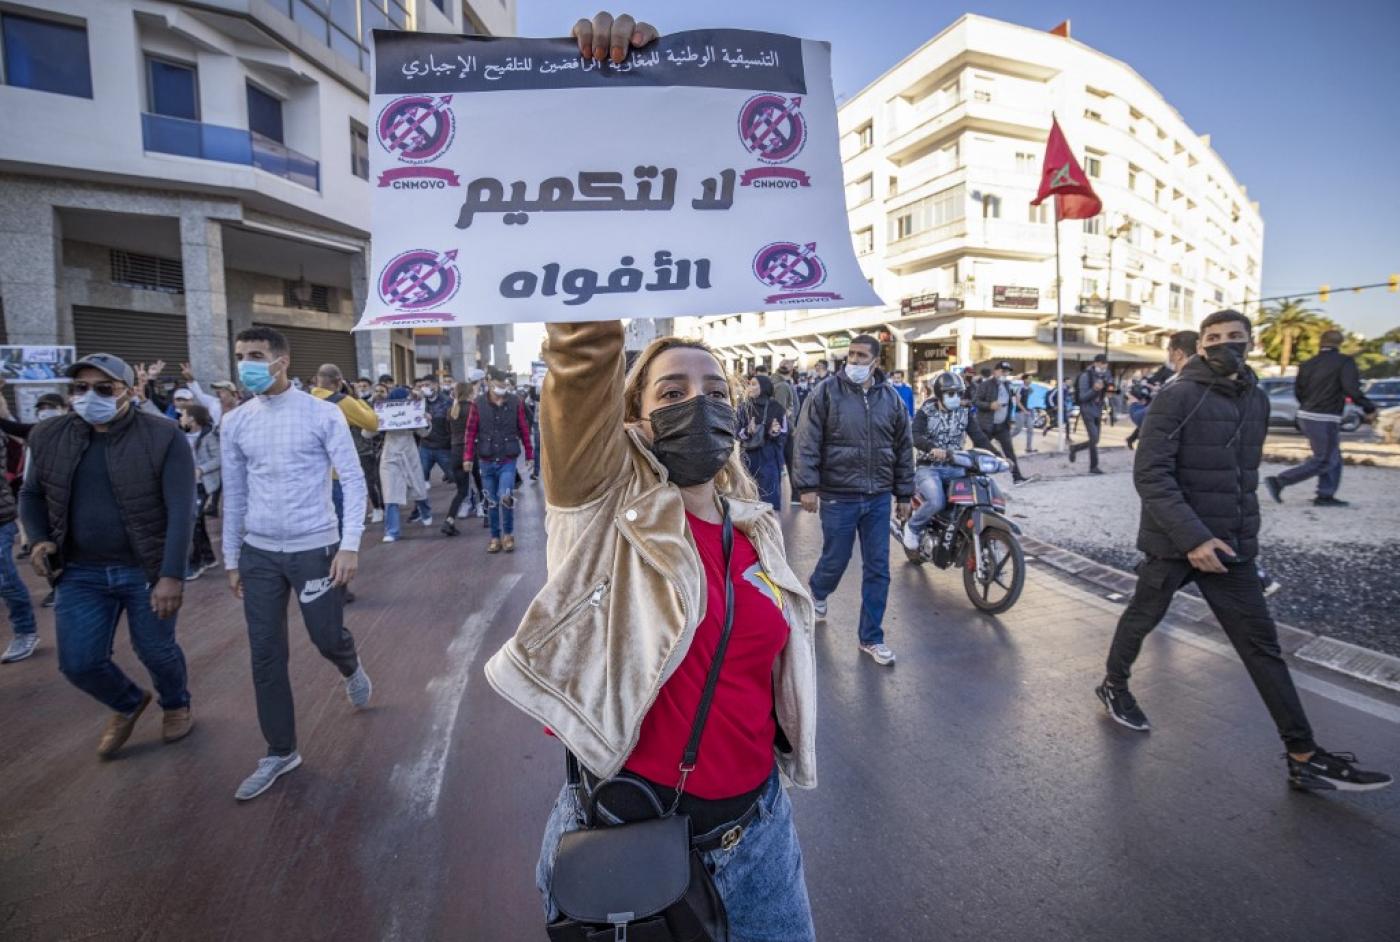 النظام المغربي مخطئ في عدم الاستماع إلى الثورة الاجتماعية المتنامية في المغرب watanserb.com